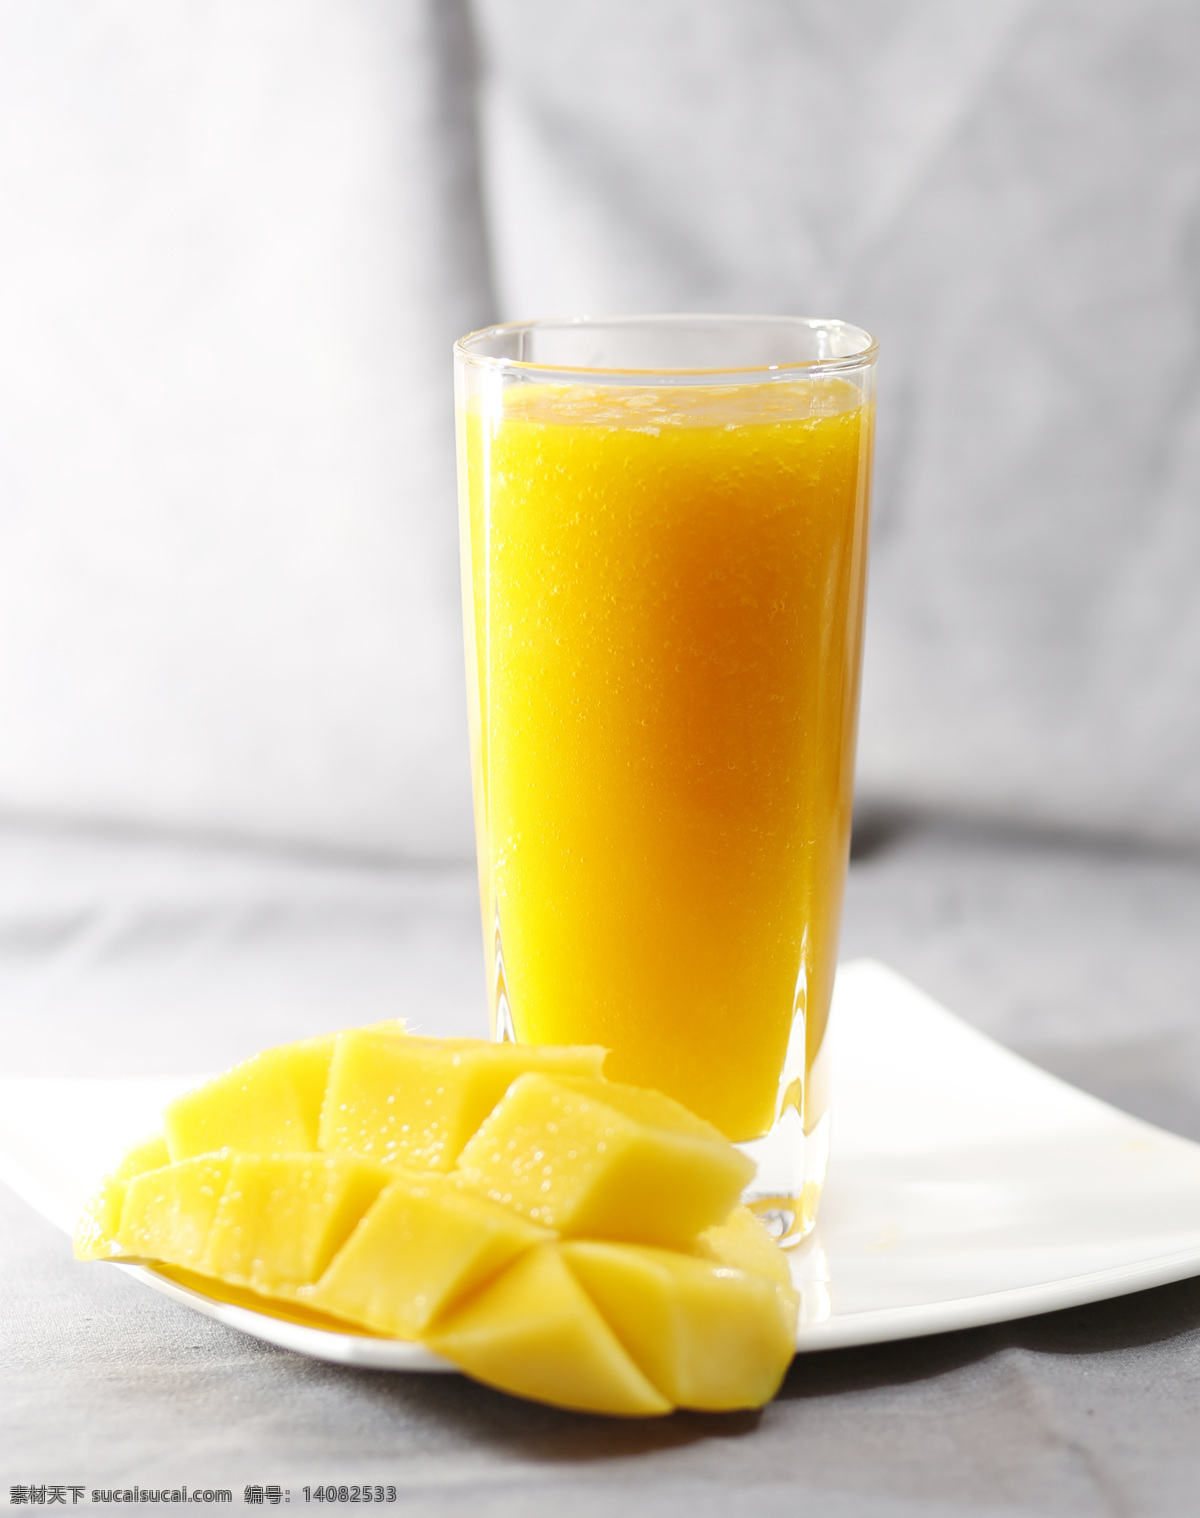 芒果汁 芒果西米露 饮品 果汁 芒果 芒汁 芒果橙 饮料酒水 餐饮美食